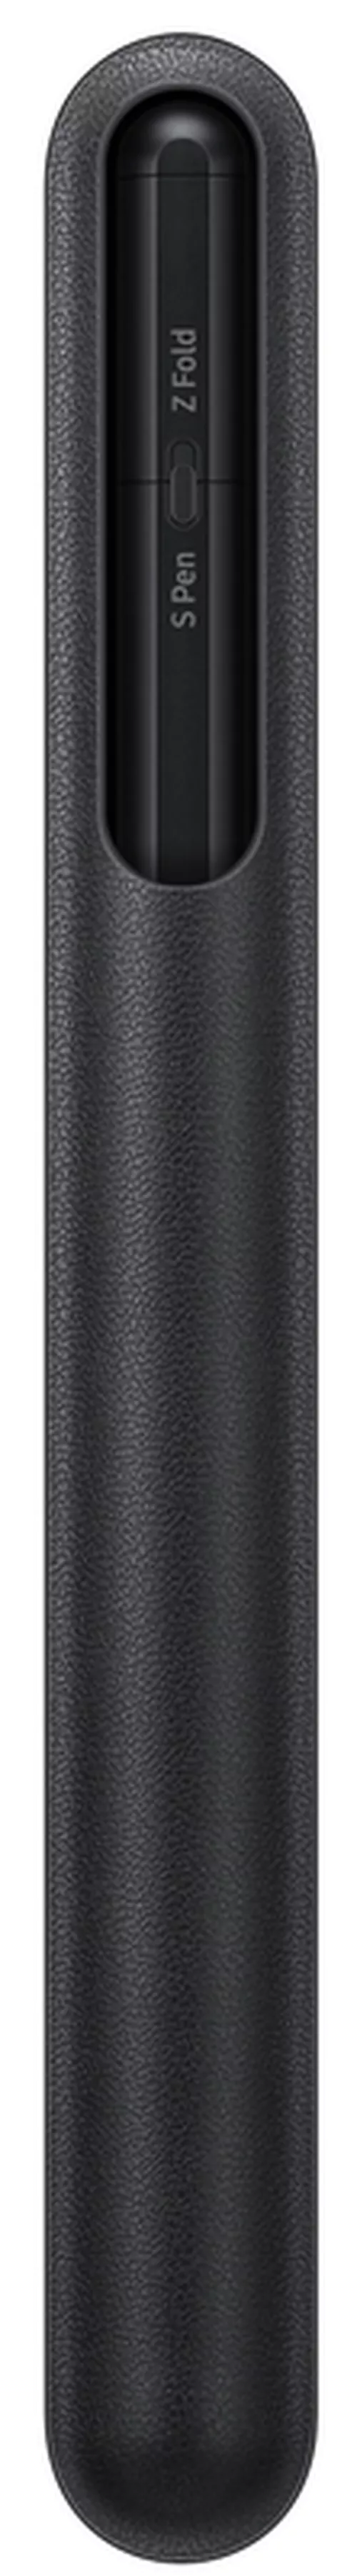 купить Аксессуар для моб. устройства Samsung EJ-P5450 S Pen Pro Black в Кишинёве 